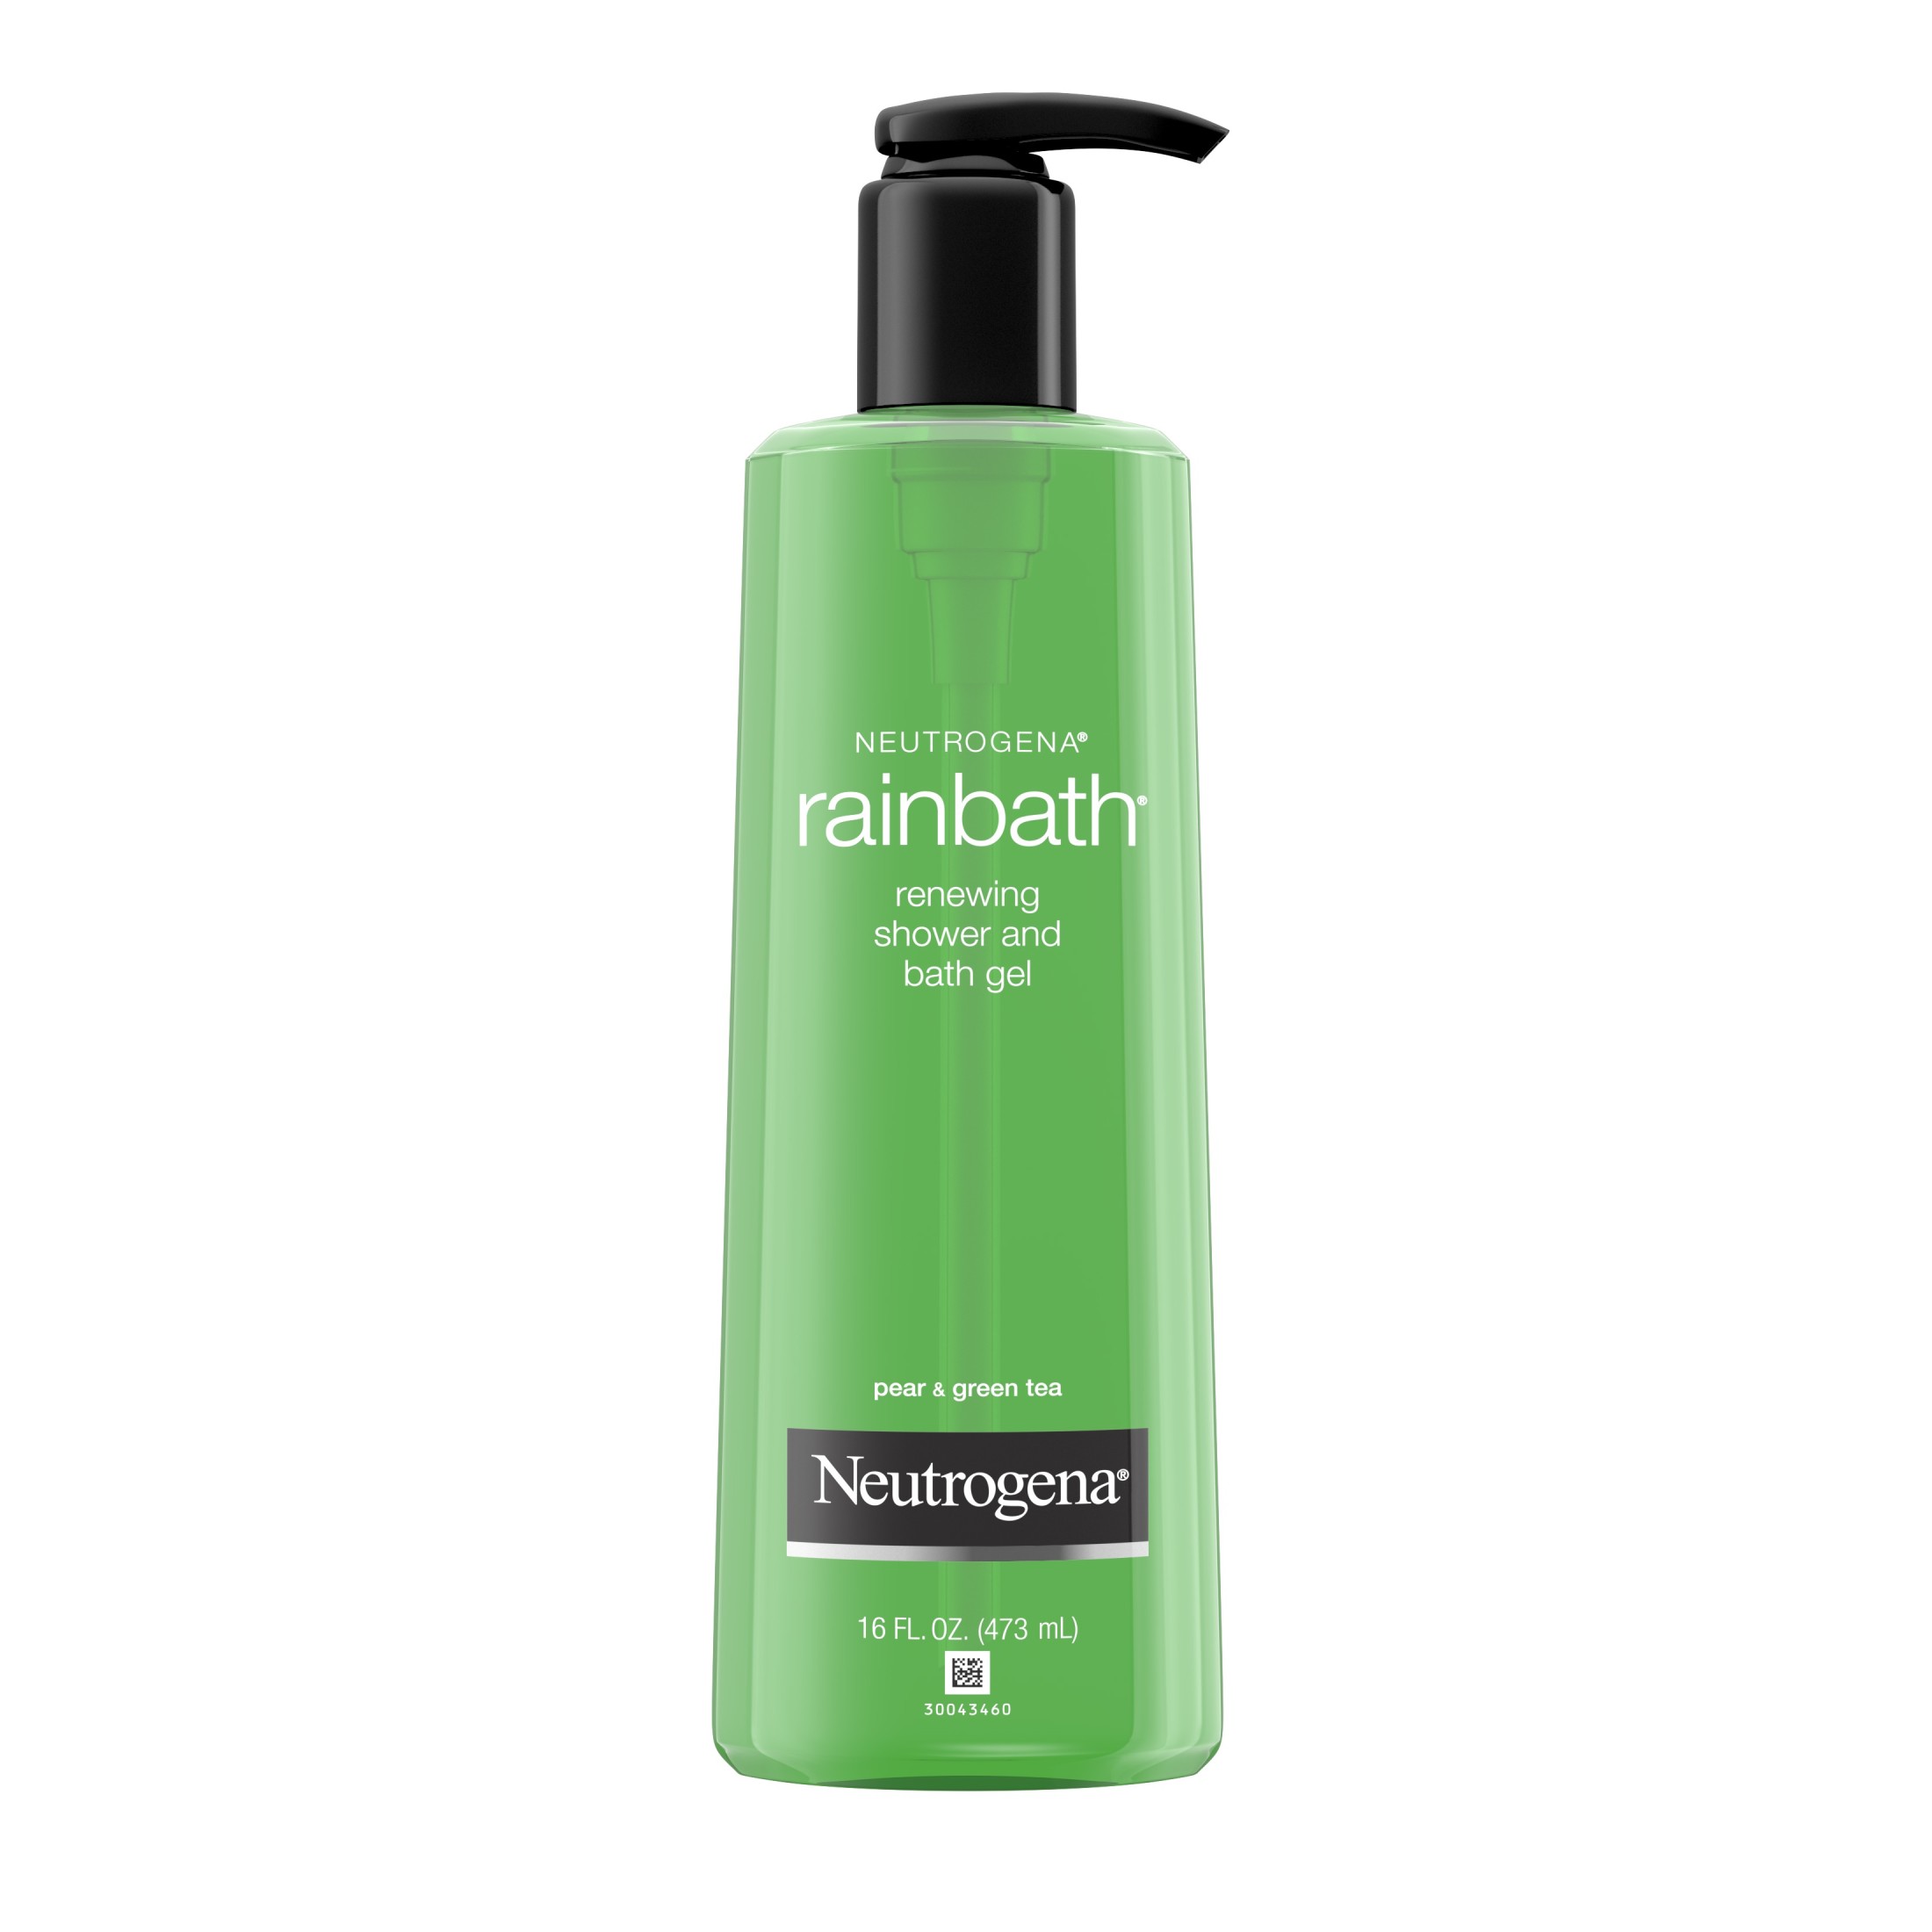 Neutrogena Rainbath Shower and Bath Gel, Pear and Green Tea, 16 fl. oz - image 1 of 14